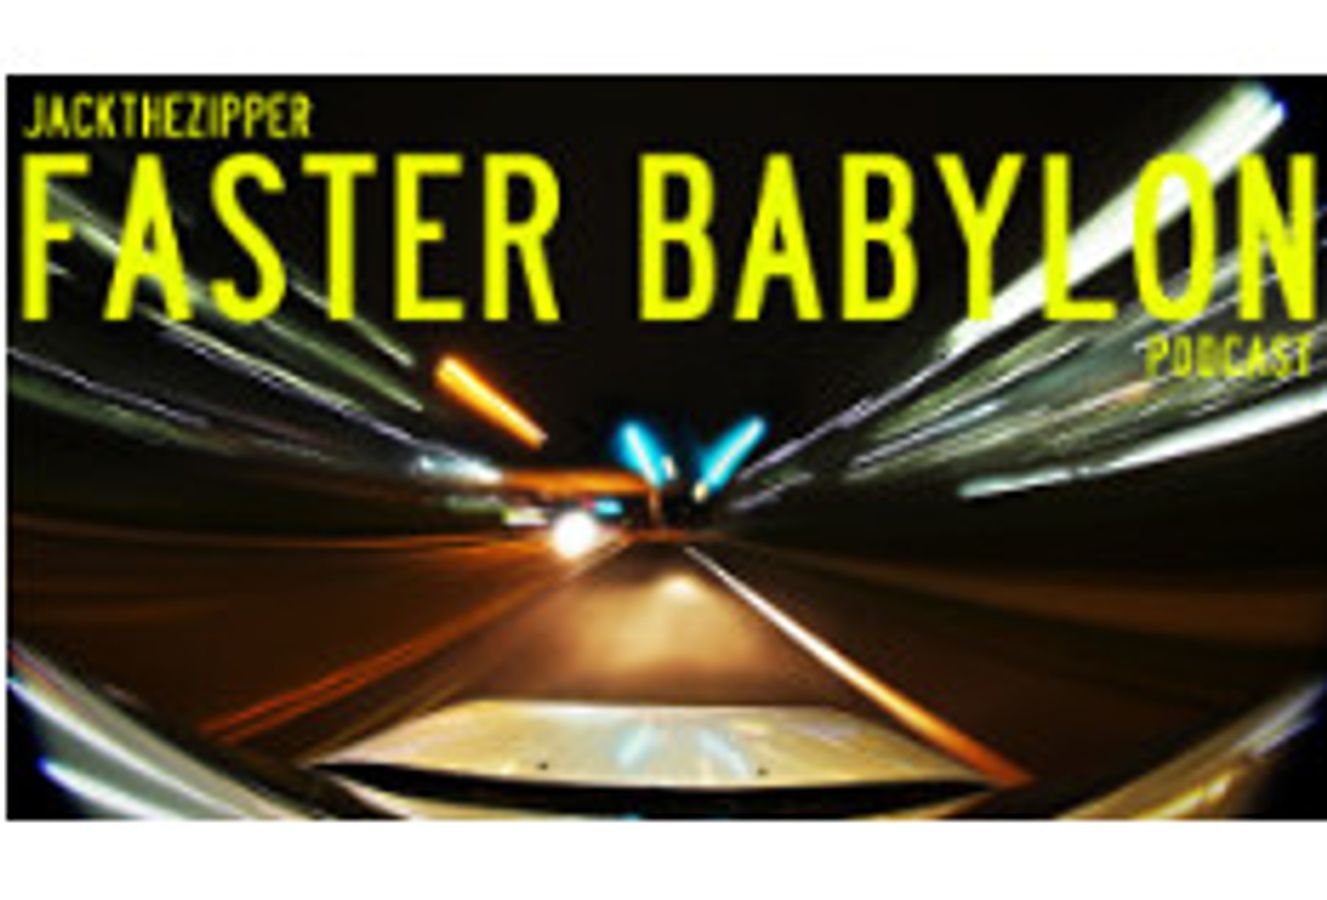 Faster Babylon Podcast